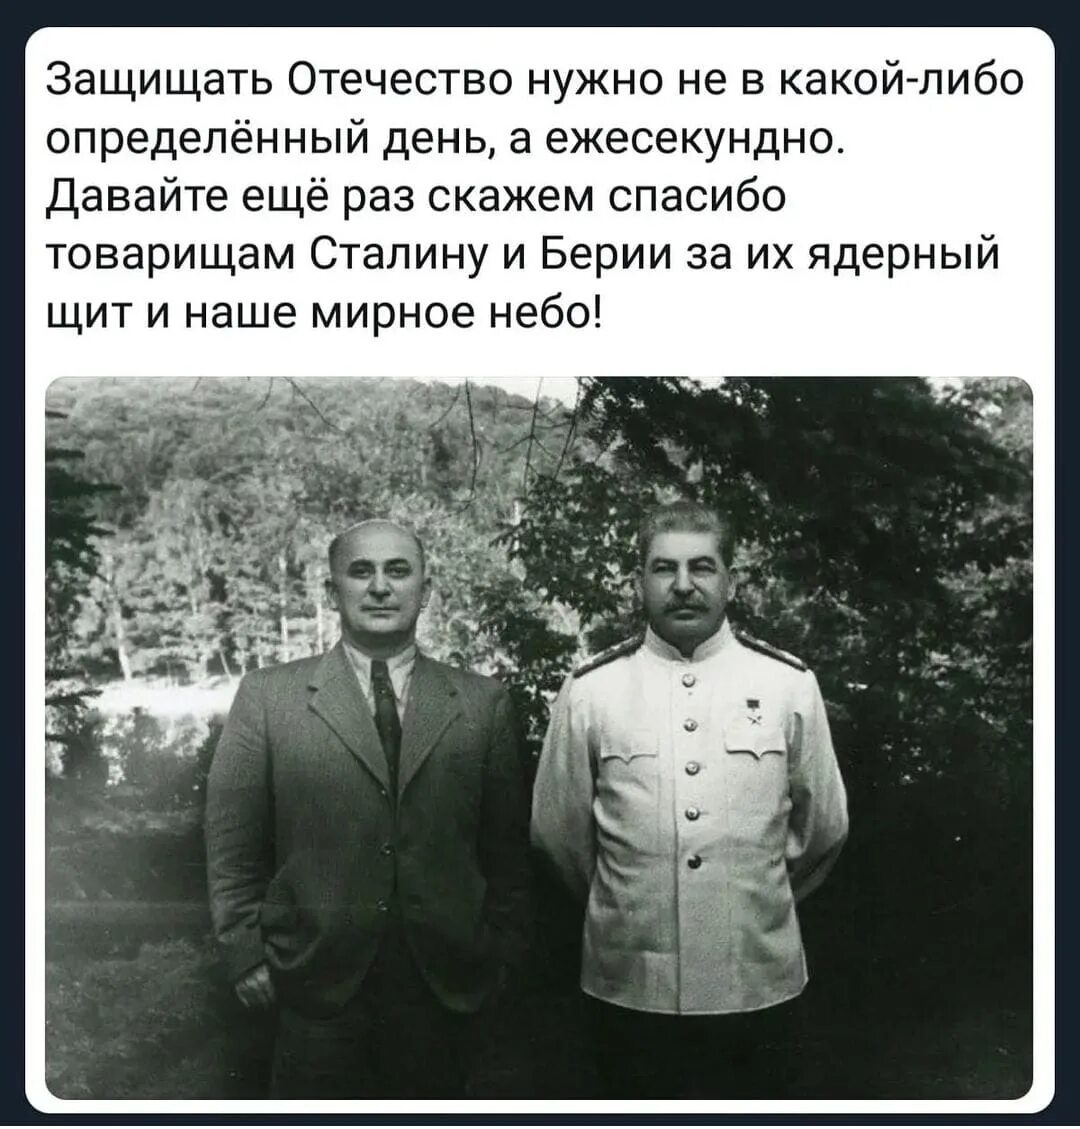 Сталин и Берия. Сталин русский грузинского происхождения. Сталин я русский человек грузинской национальности. Сталинский ядерный щит. Цитаты берии